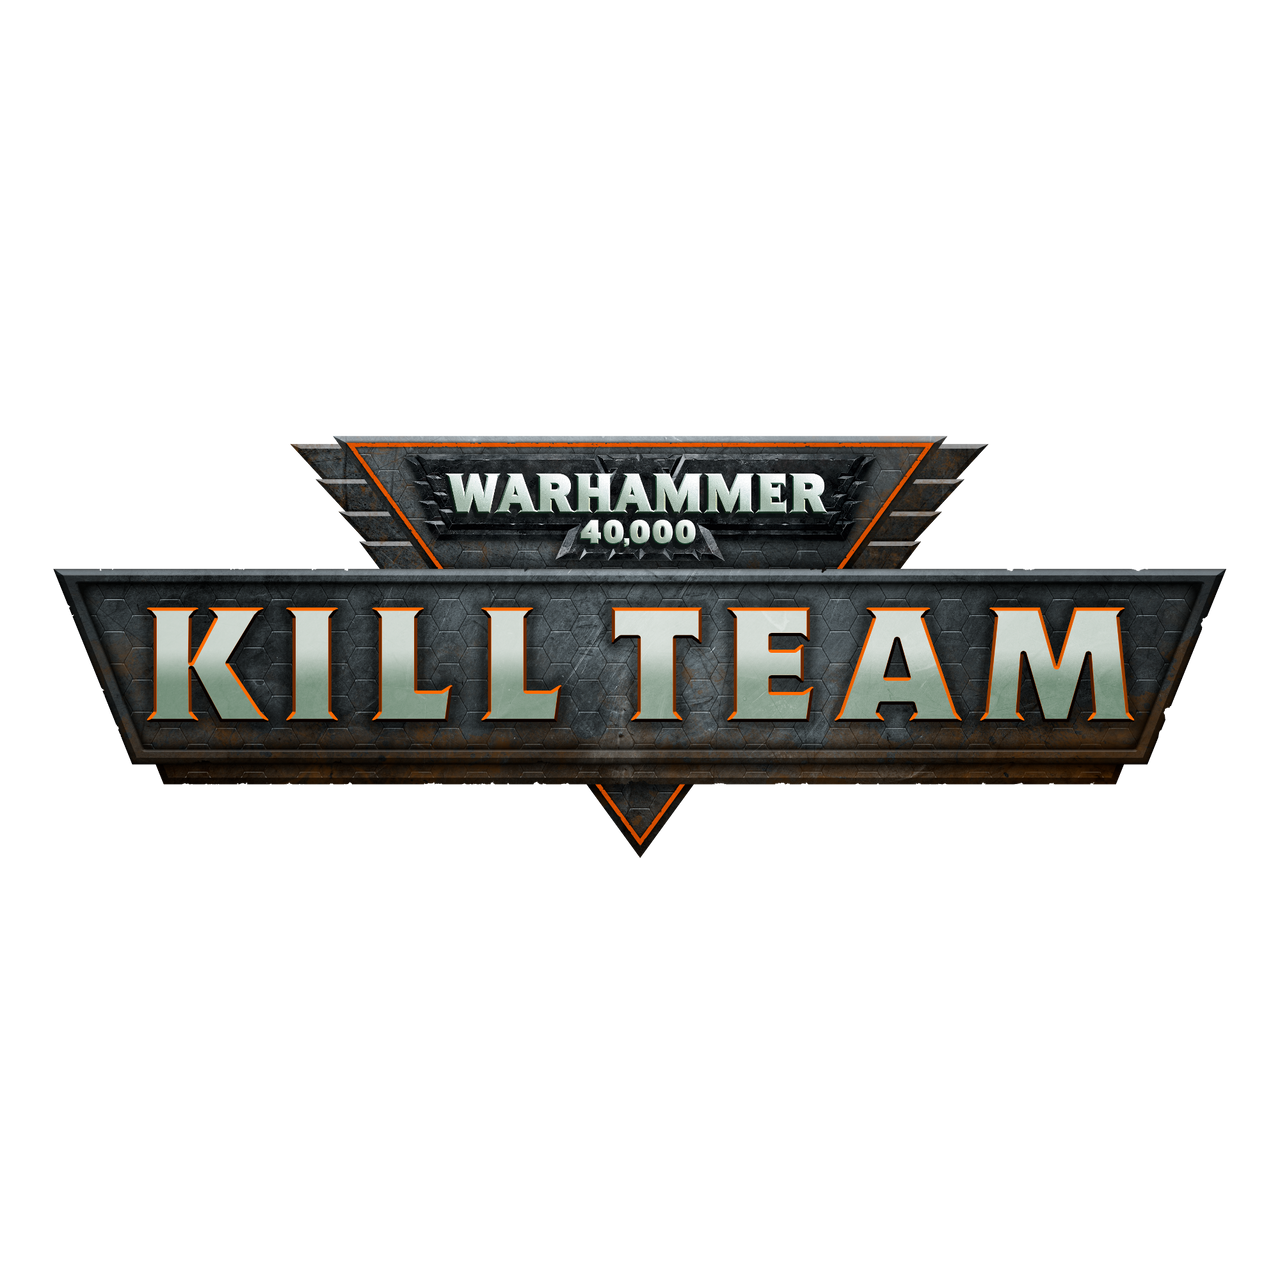 Kill Team